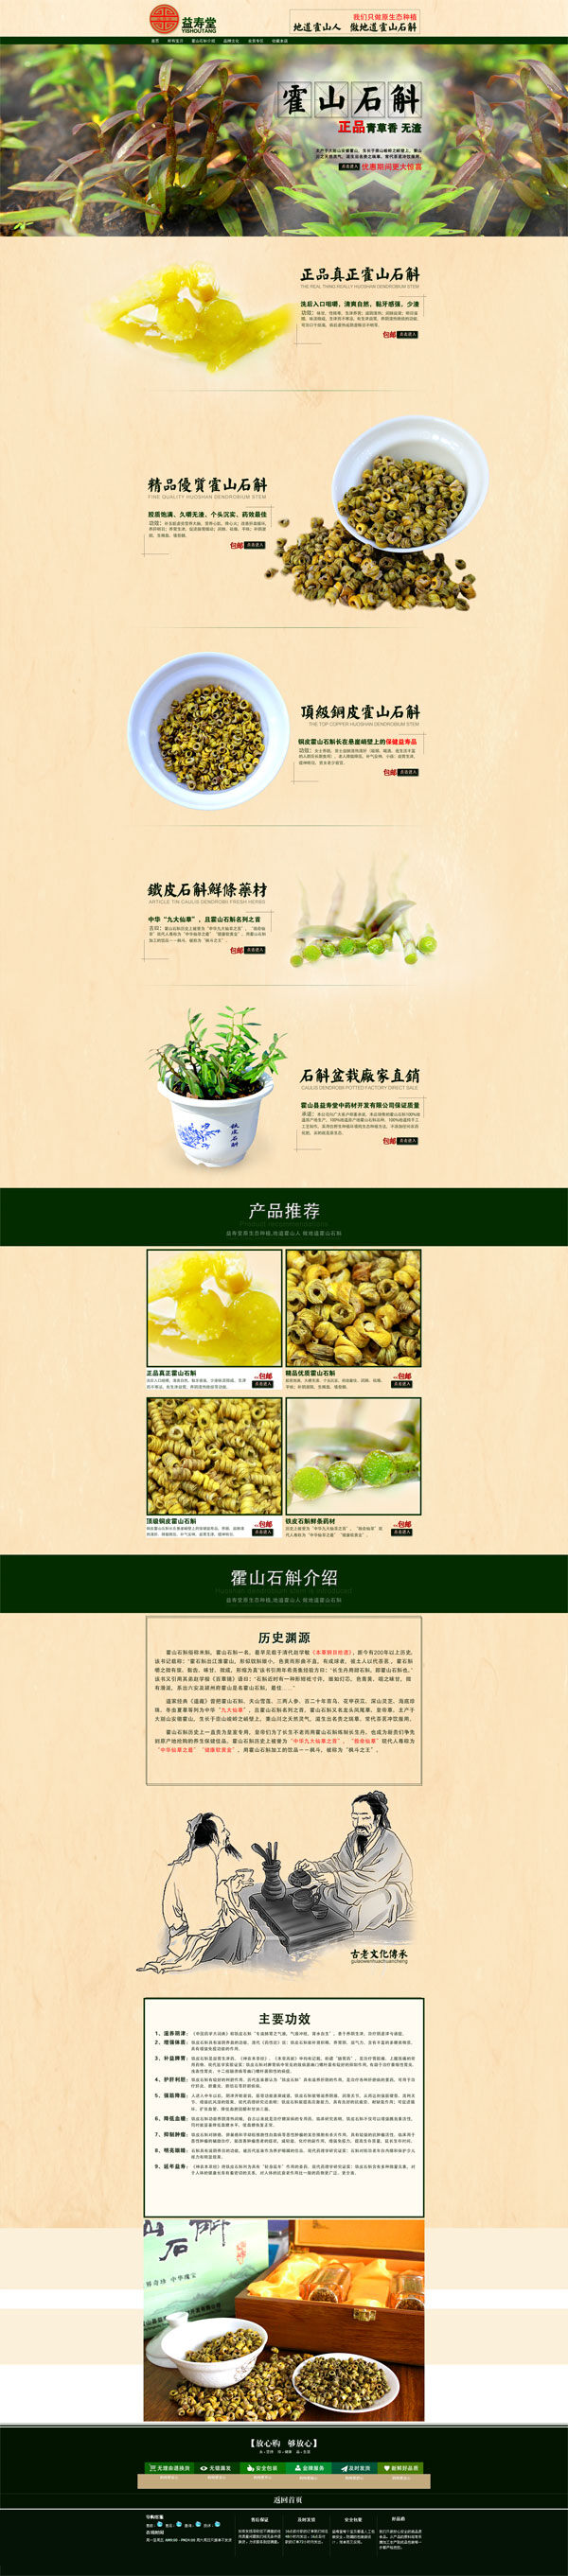 古典茶叶店铺 益寿堂 霍山石斛 产品推荐 原生态种植 淘宝店铺模板 淘宝素材 黄色